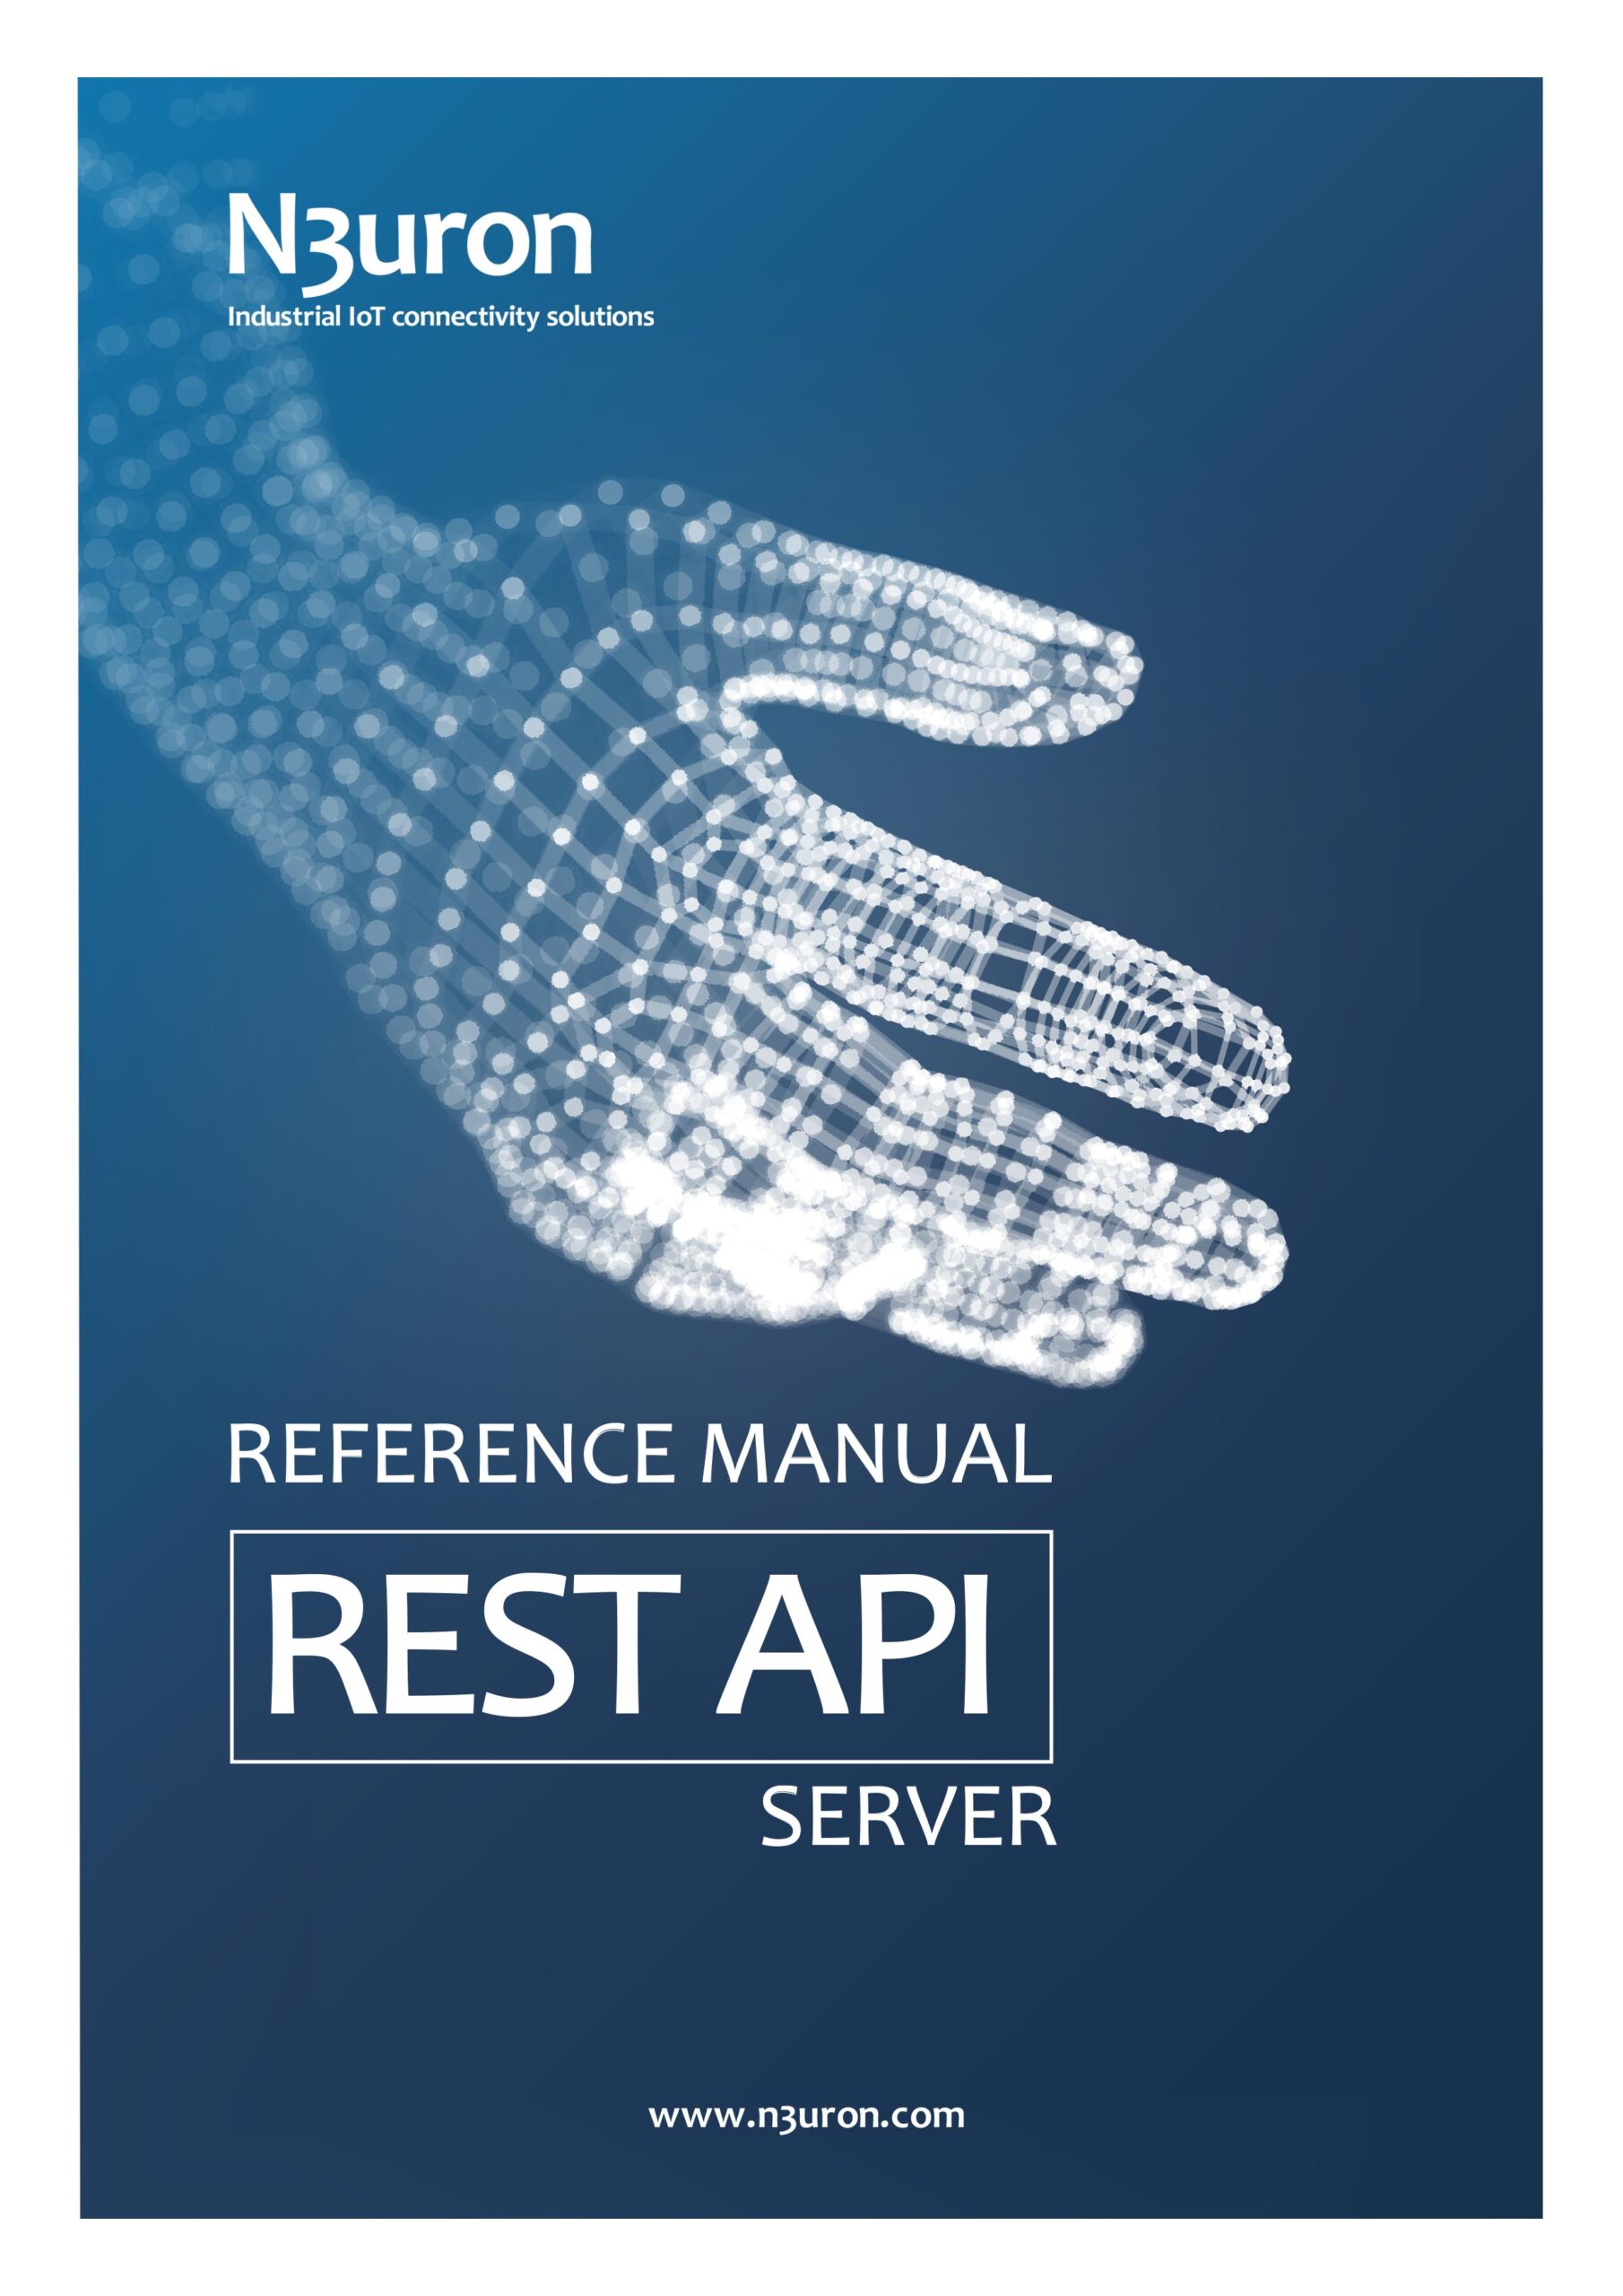 N3uron Industrial IoT communication platform Rest Api Server Manual Cover.